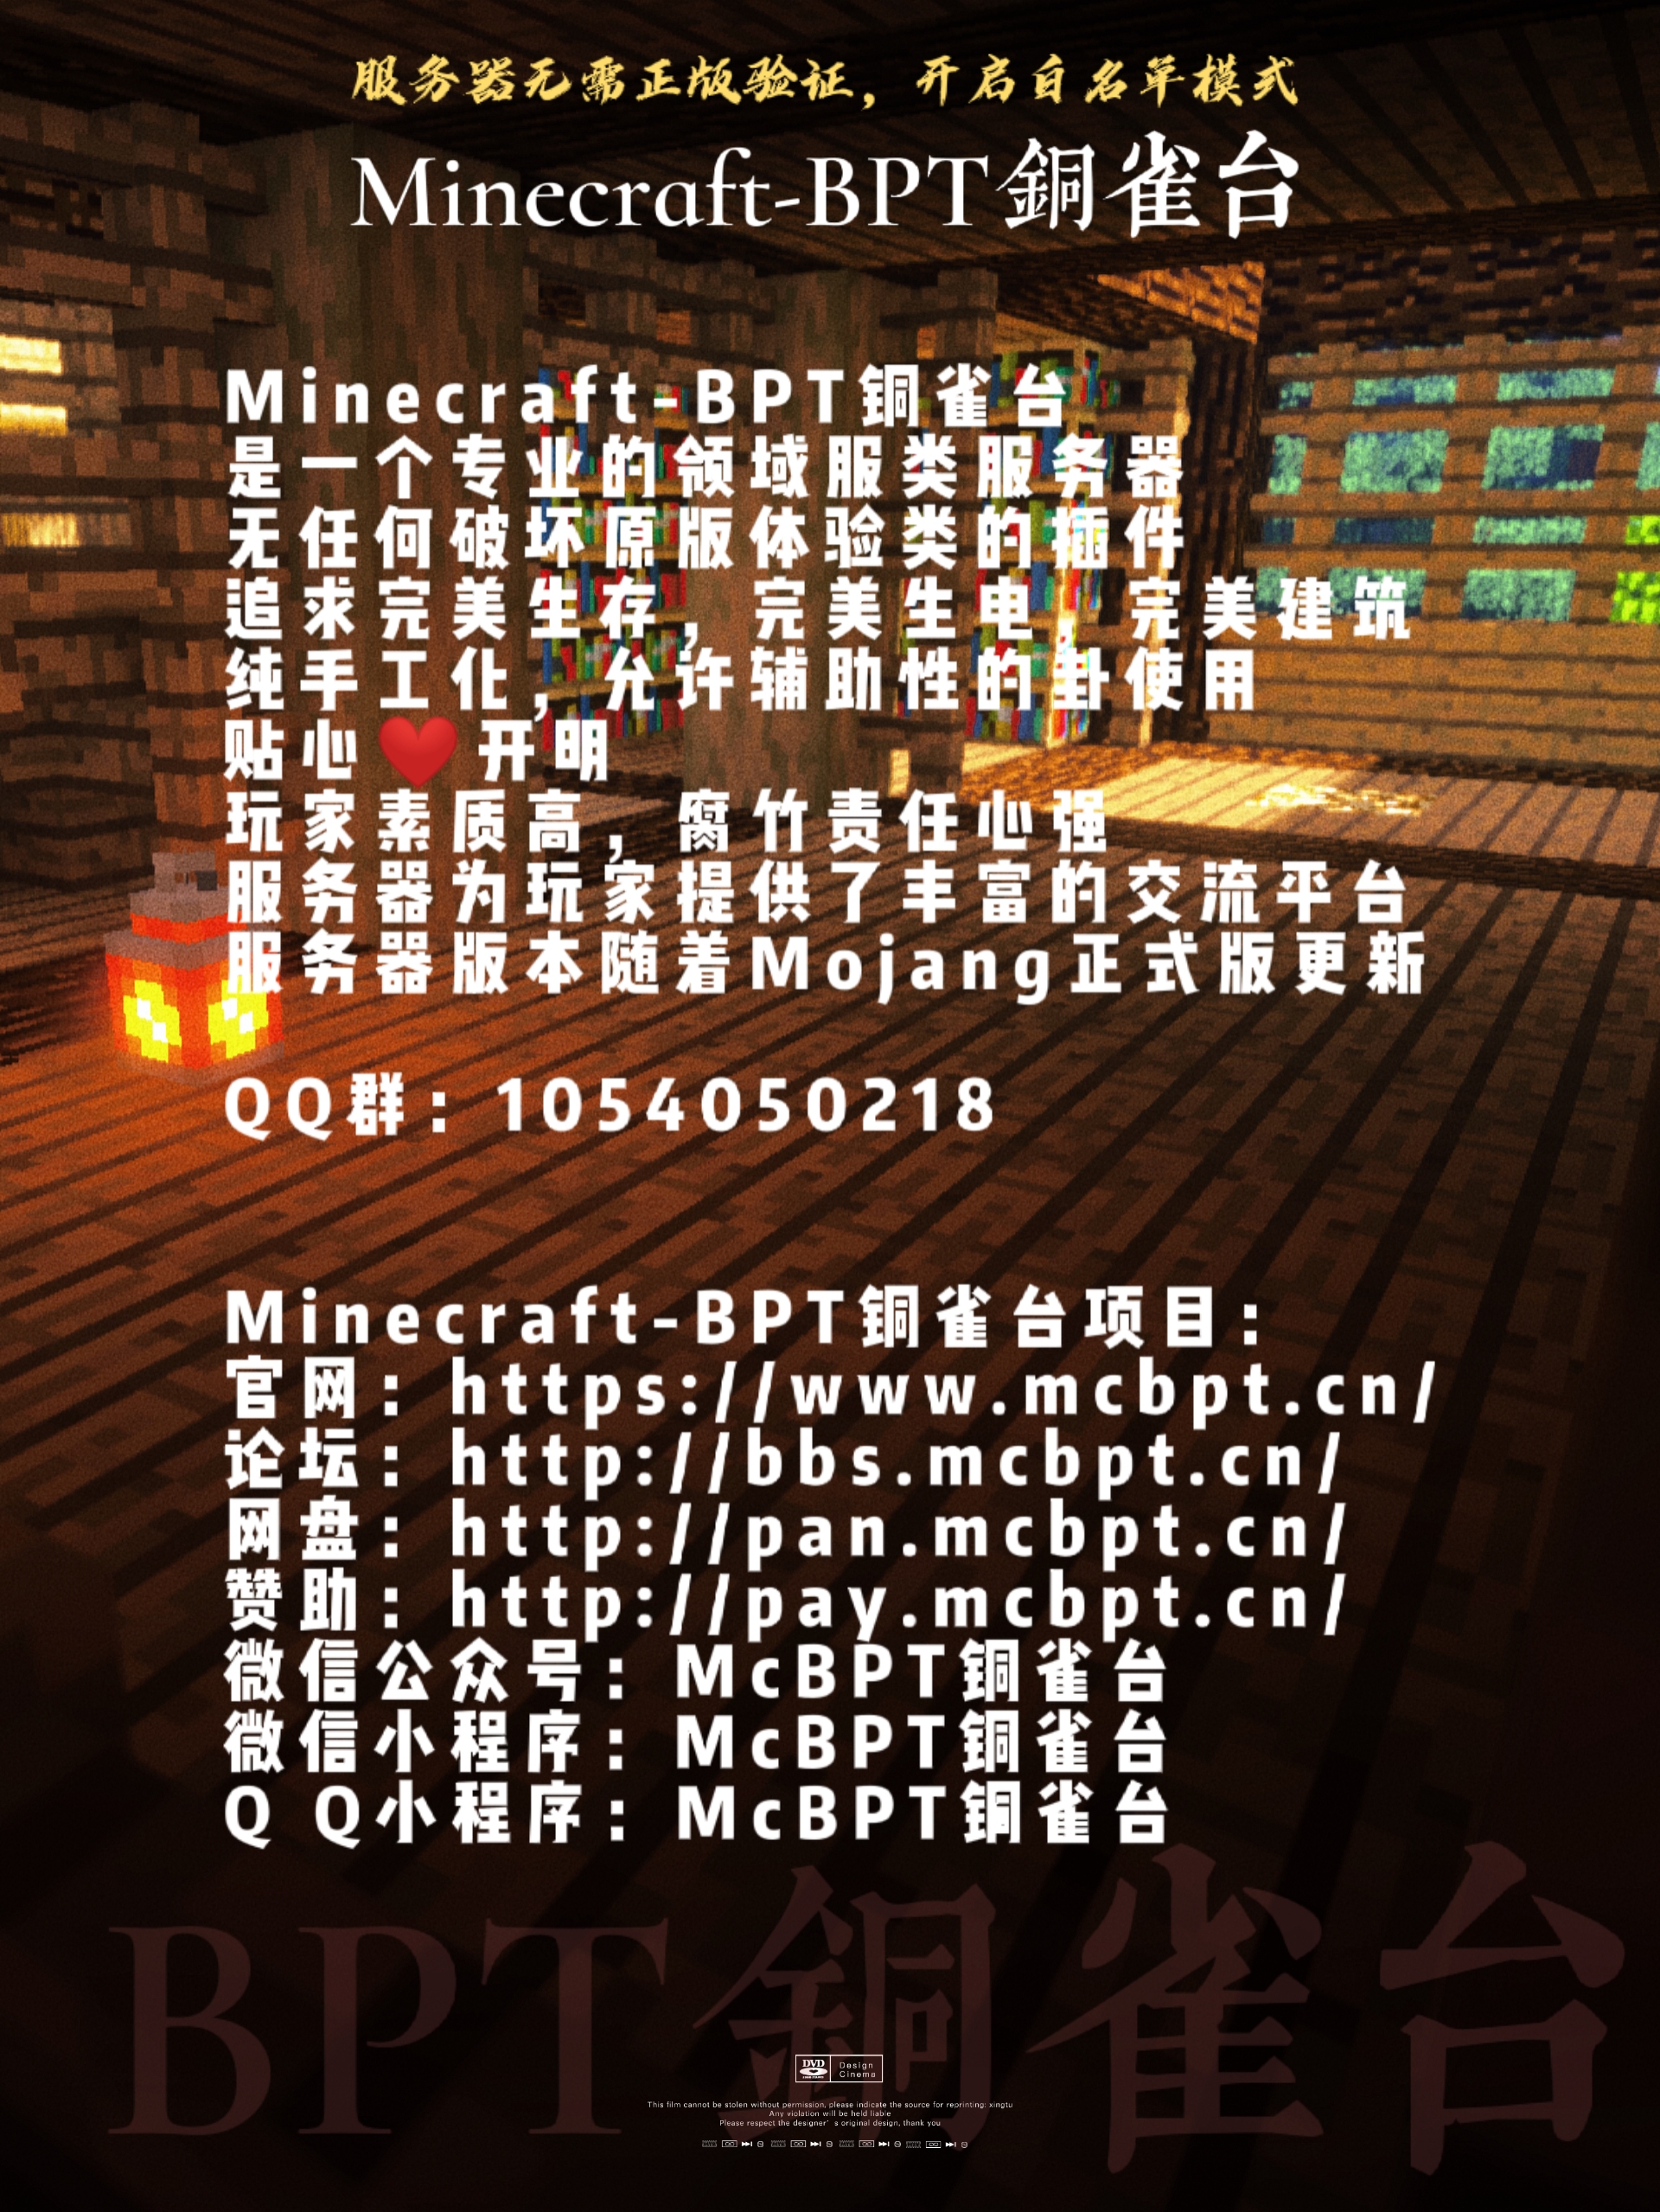 Minecraft-BPT铜雀台服务器简介及公告2021年3月13日